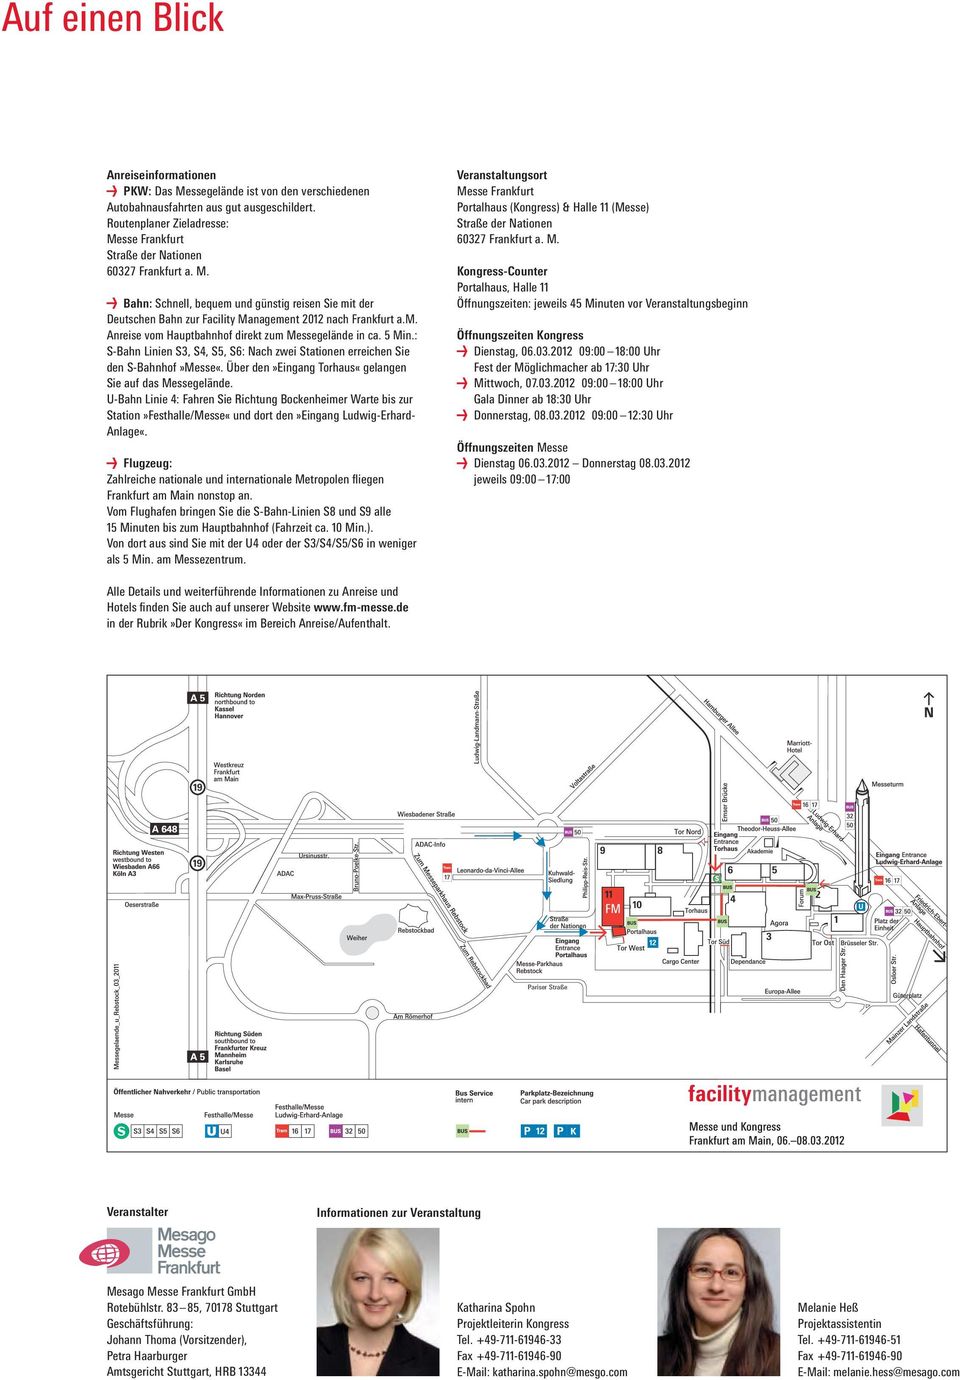 5 Min.: S-Bahn Linien S3, S4, S5, S6: Nach zwei Stationen erreichen Sie den S-Bahnhof»Messe«. Über den»eingang Torhaus«gelangen Sie auf das Messegelände.